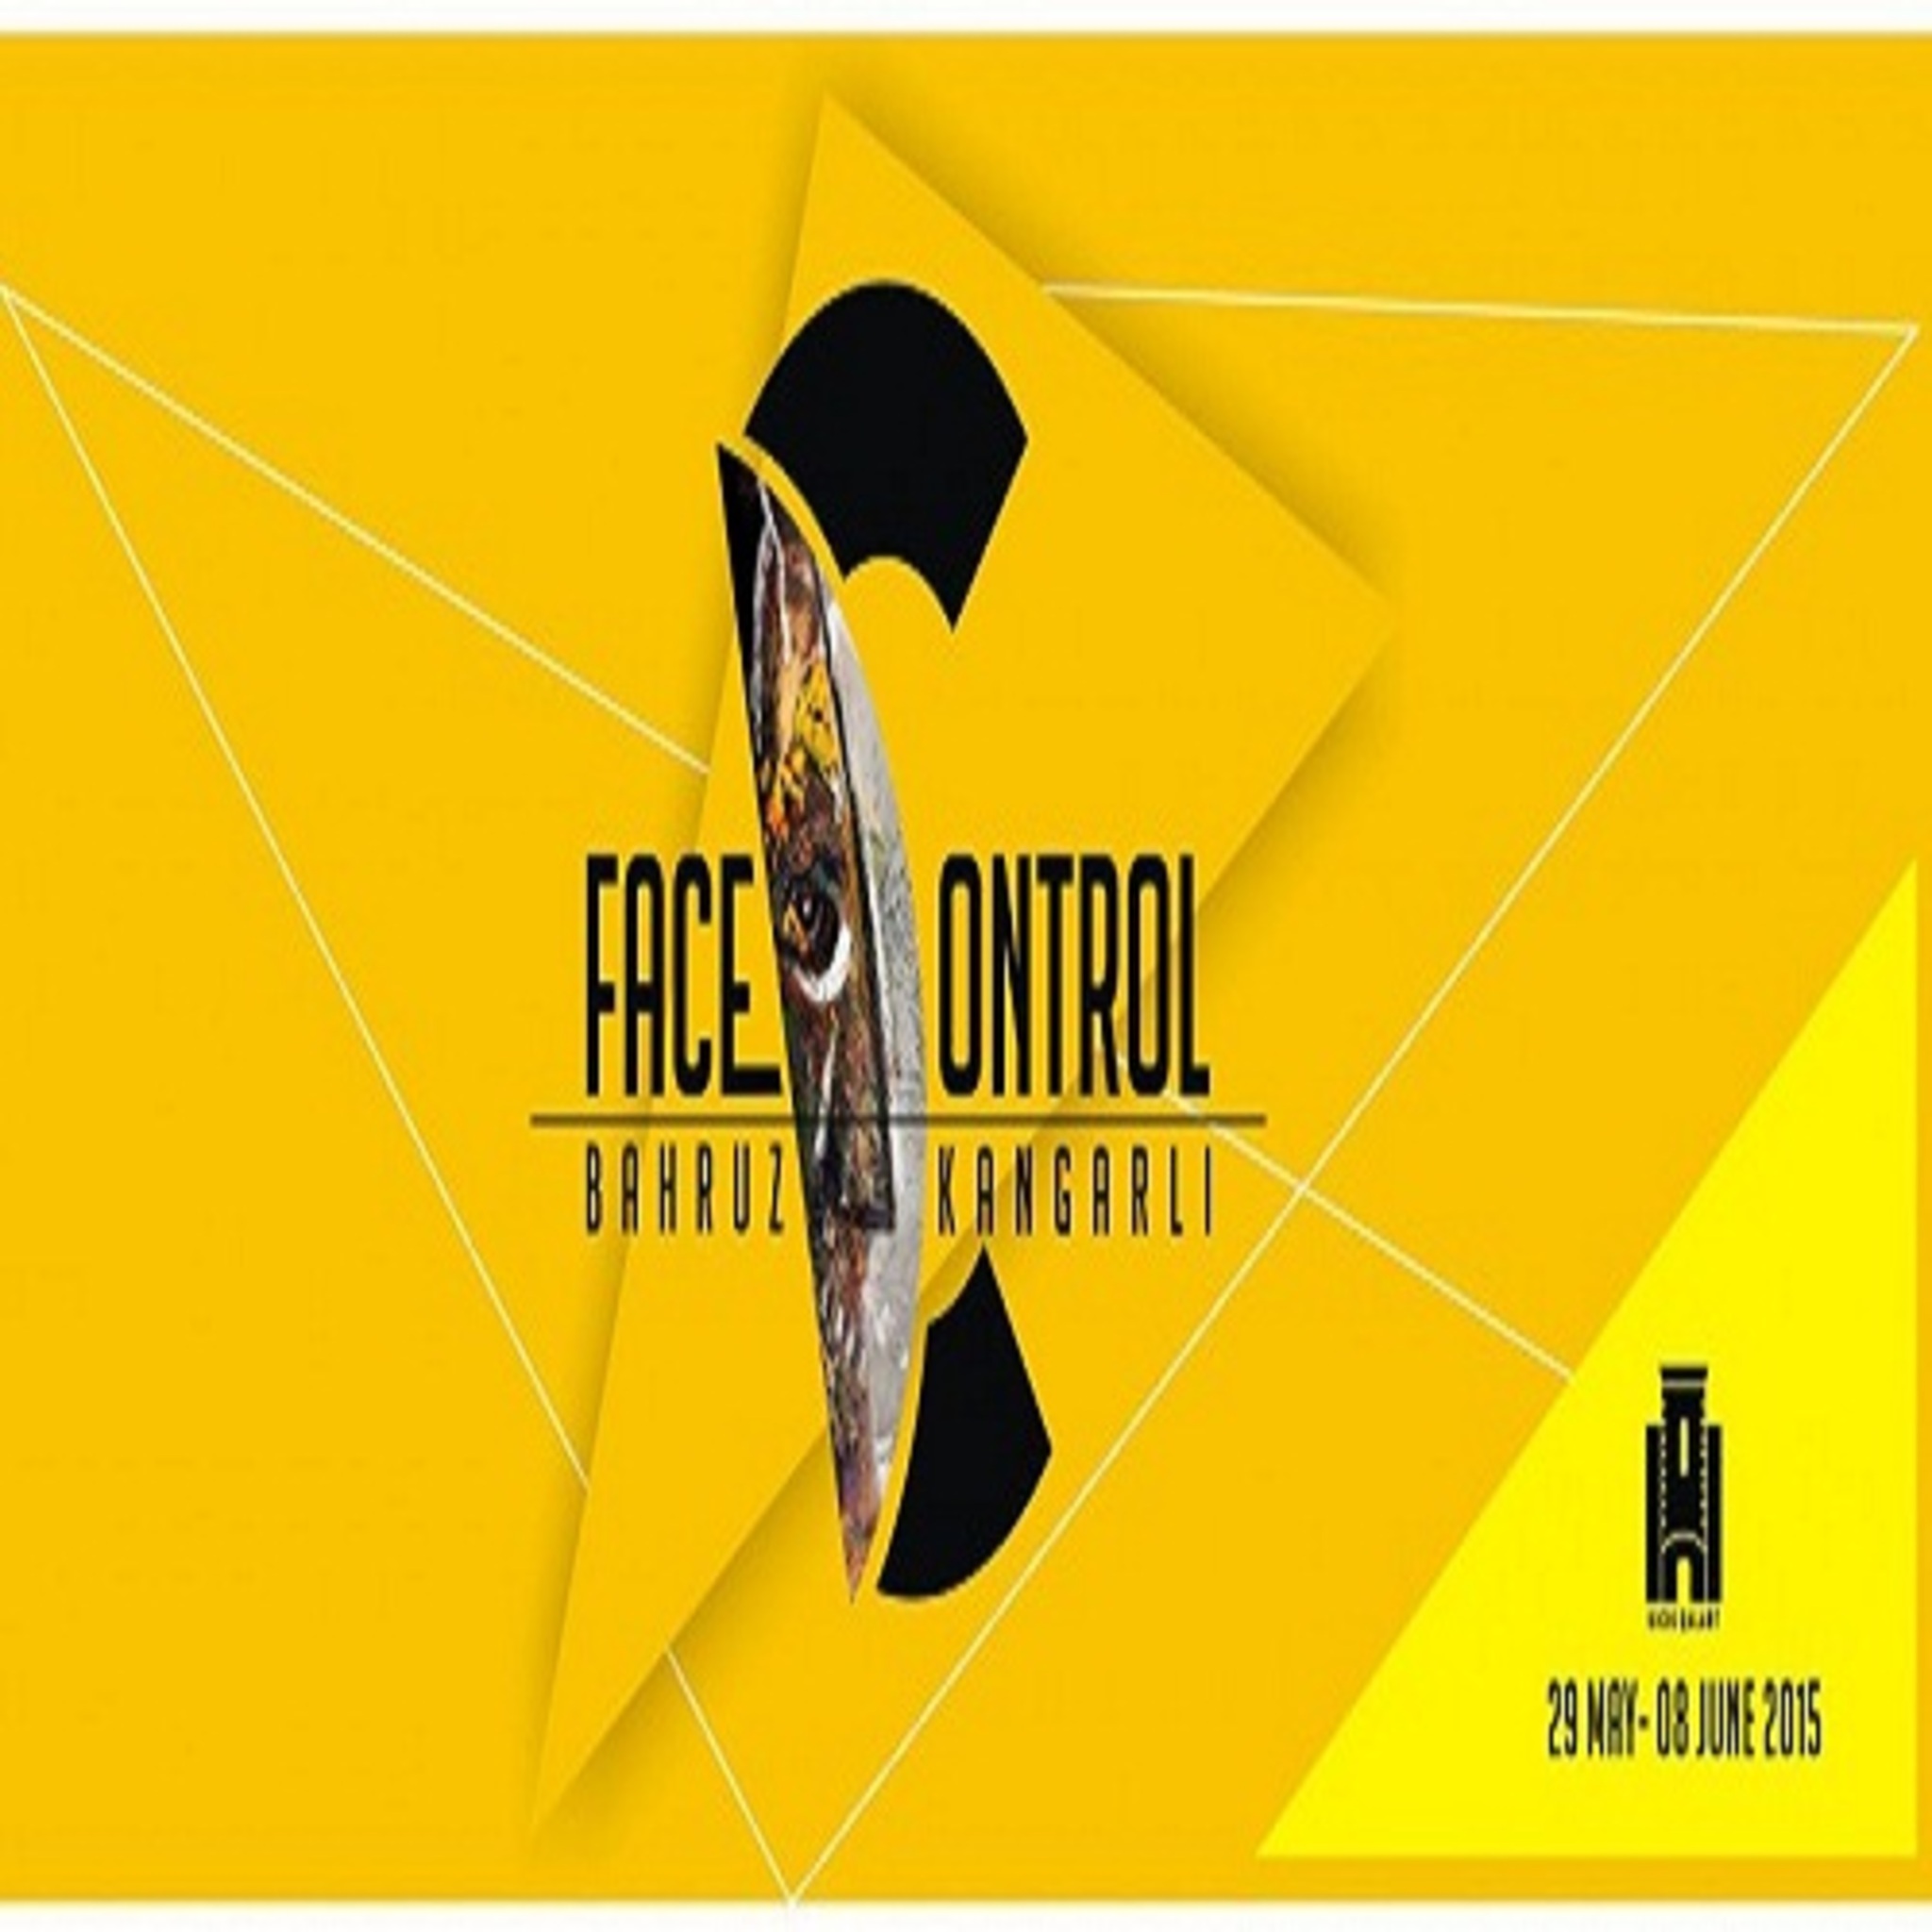 Выставка Бахруза Кенгерли «Face control»